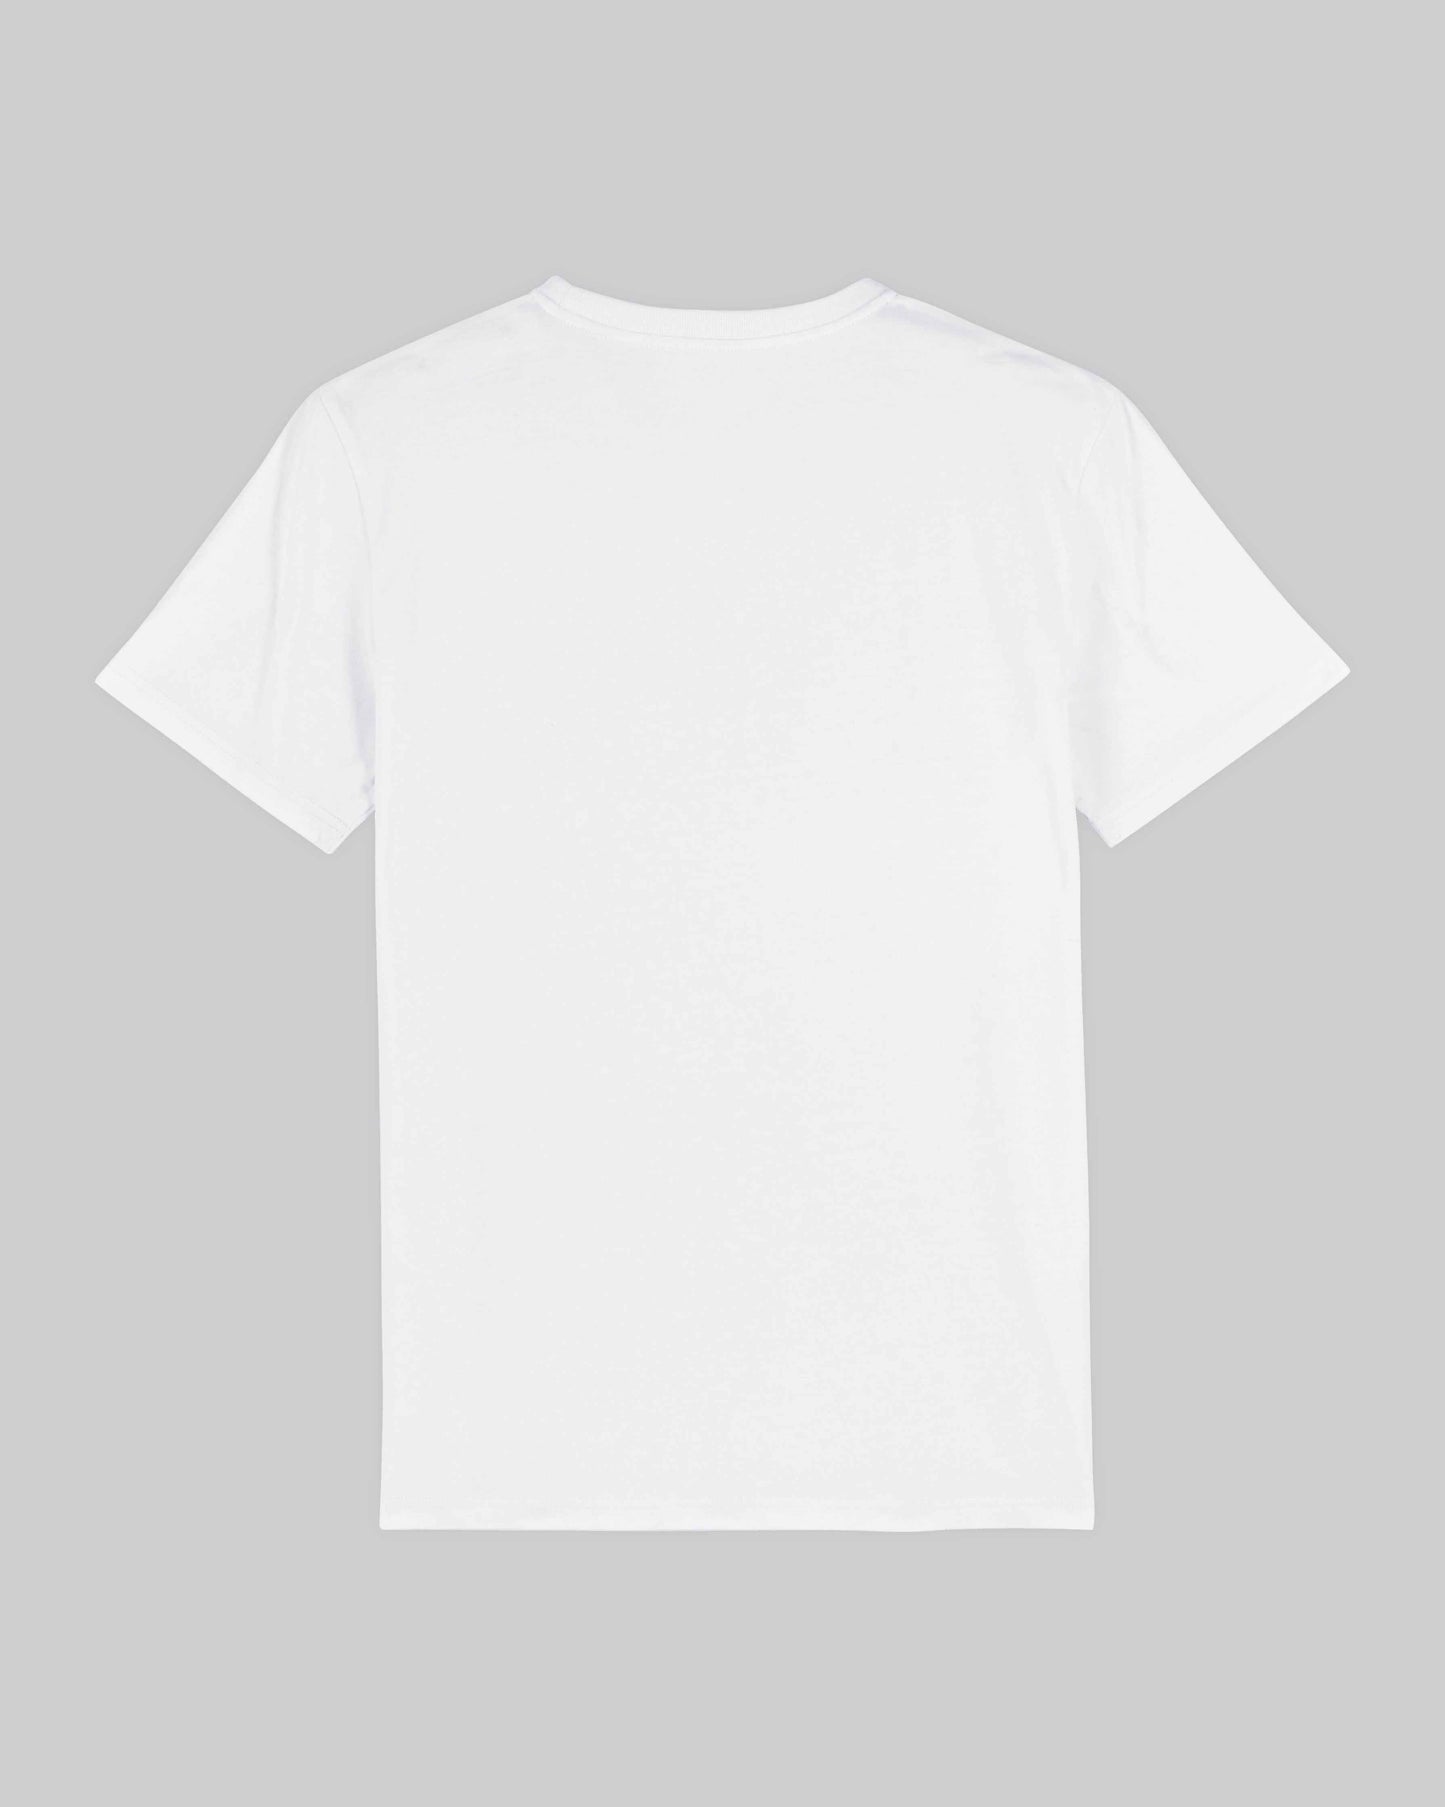 EINHORST® unisex Organic Shirt in Weiß mit dem Motiv "Abenteuer", Bild von Shirt von hinten